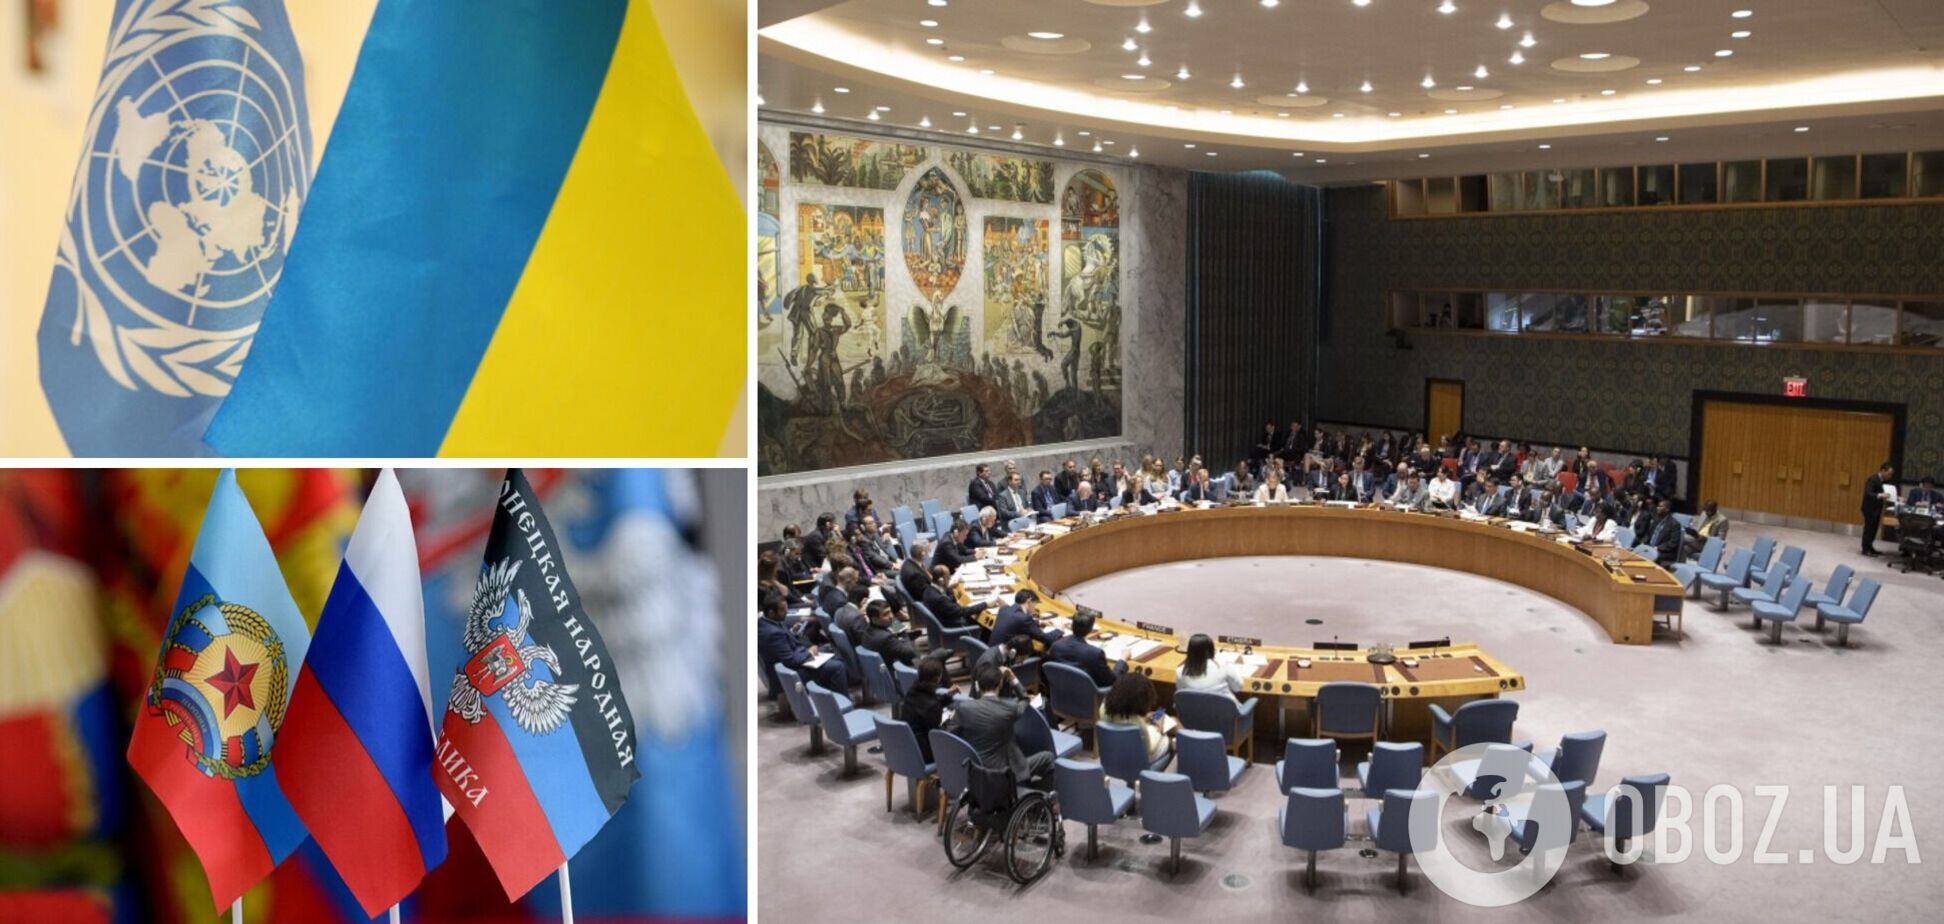 Украина запросила срочное заседание Совбеза ООН из-за обращения боевиков 'Л/ДНР' о введении войск РФ